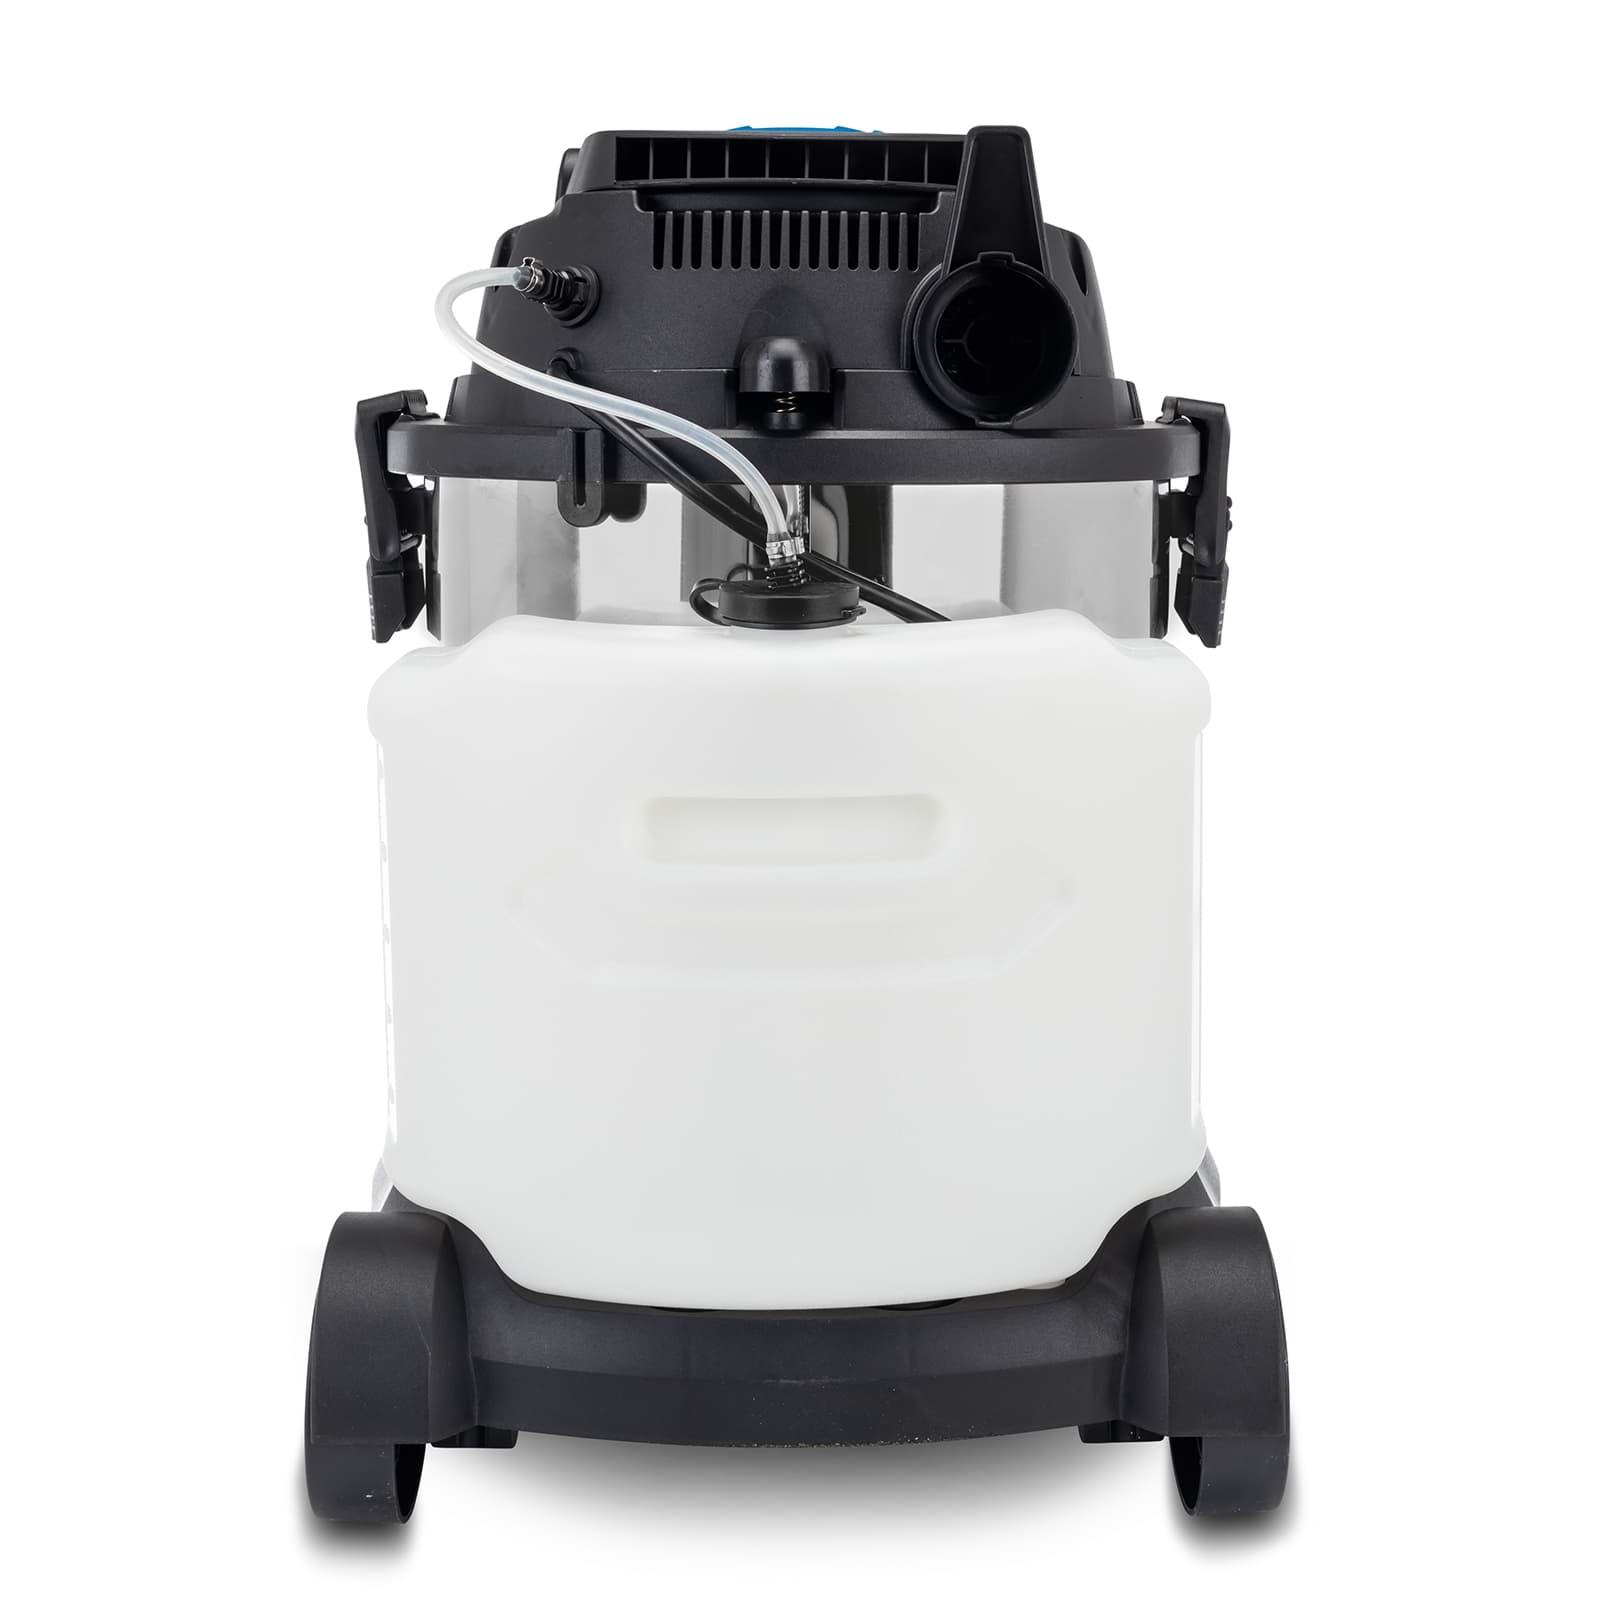 Sprüh- und Waschsauger SprayVac20 scheppach - 1600W, 20L Behälter, 5-in-1  Funktion